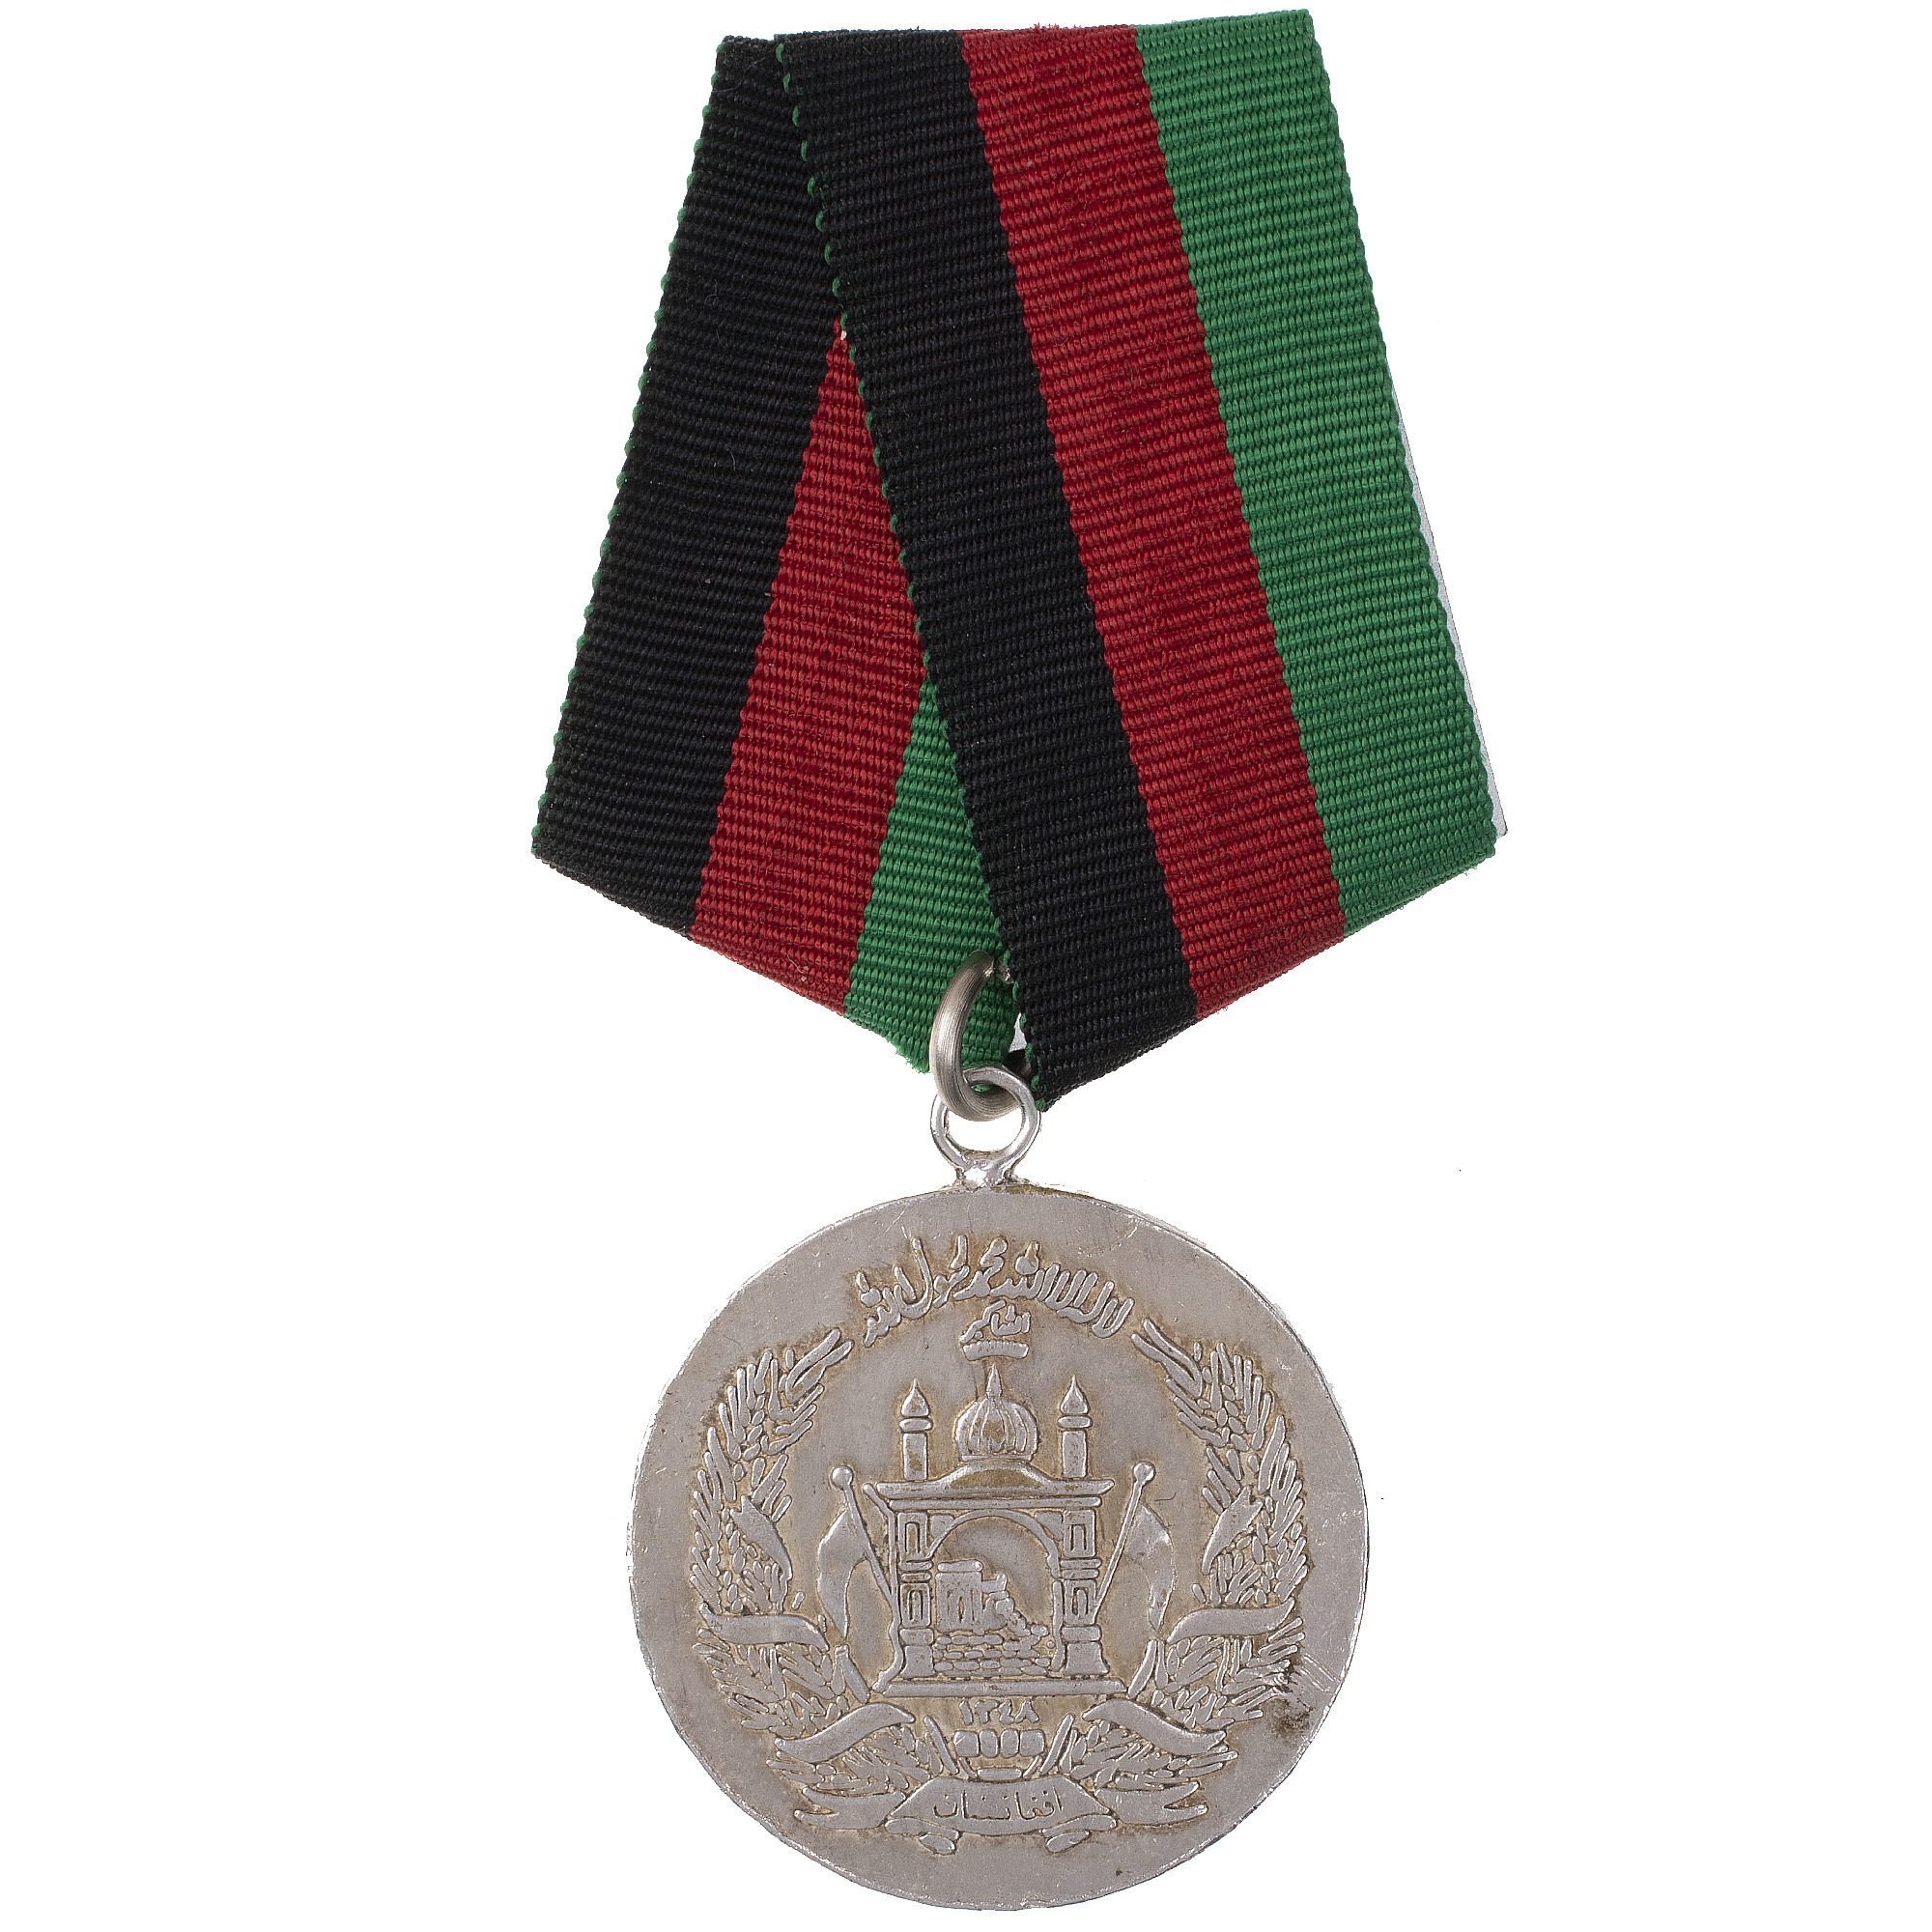 Афганистан (Исламское государство Афганистан). Медаль "За Храбрость"